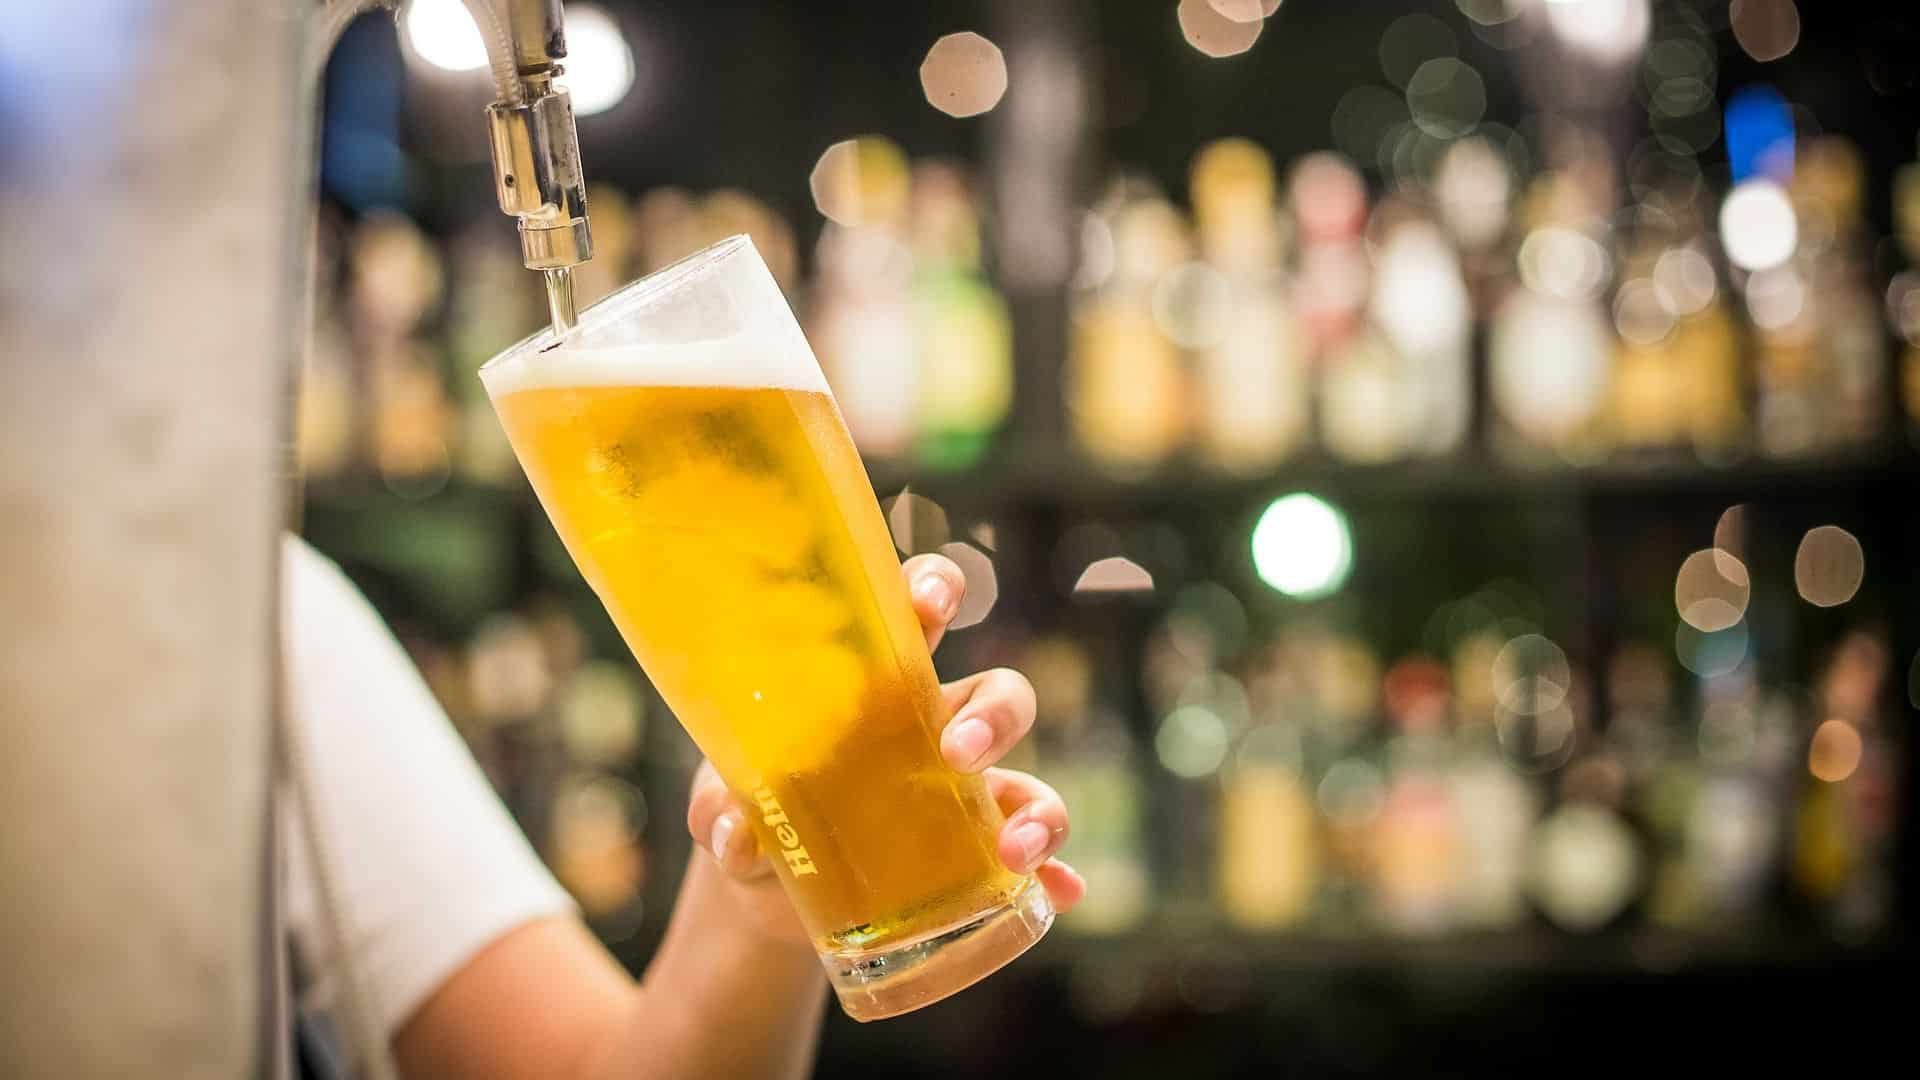 אנשים רבים שותים בירה אבל מסתבר שספא-בירה זו תופעה נפוצה בעולם